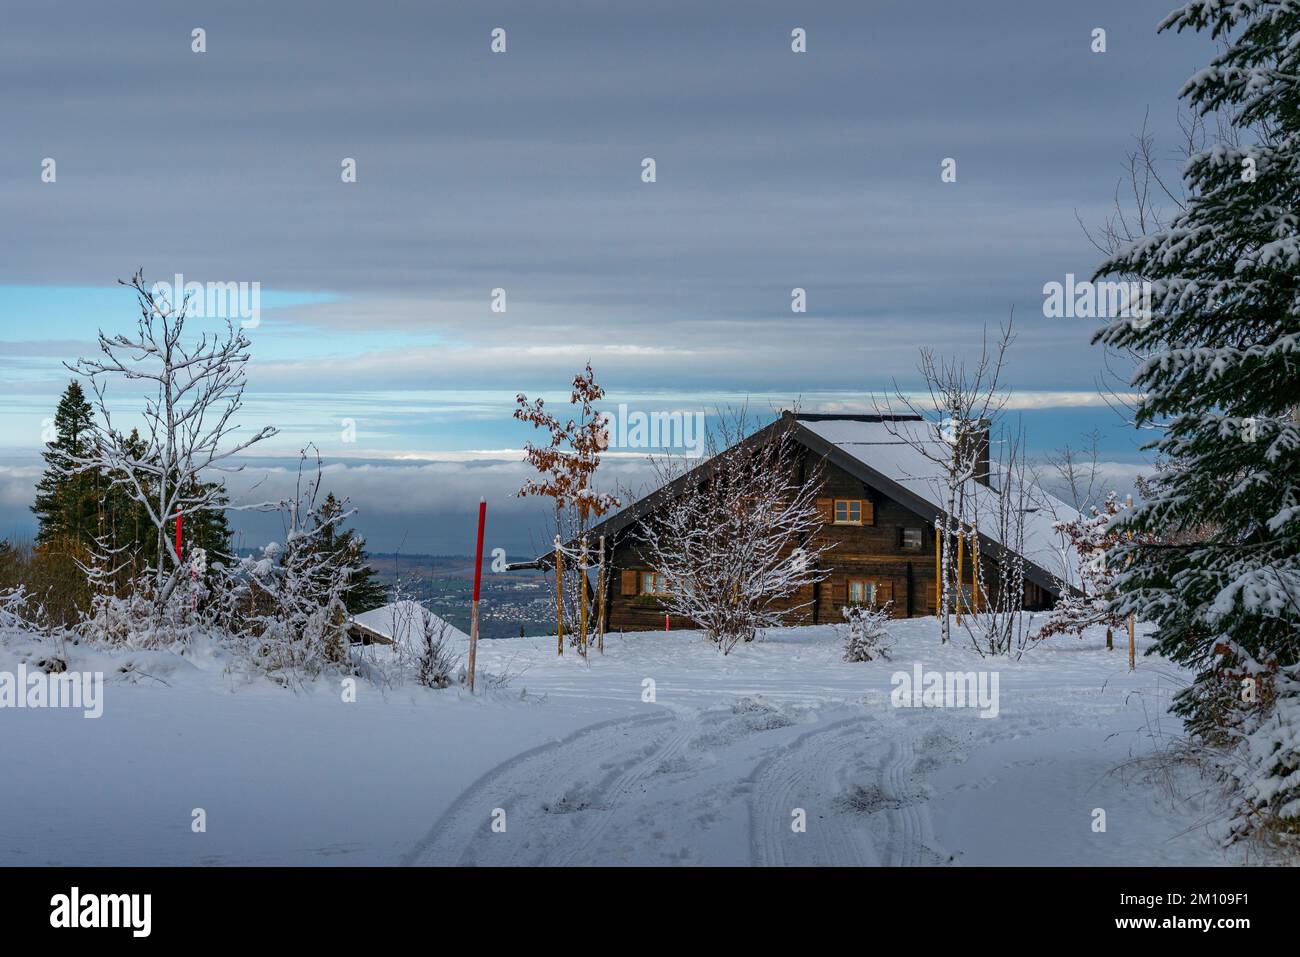 Holzhaus, Ferienhaus am Waldrand auf dem Hügel im ersten Schnee, verschneite Landschaft mit weißen Wiesen und Bäumen. Avent und Weihnachtszeit Ferien Foto Stock